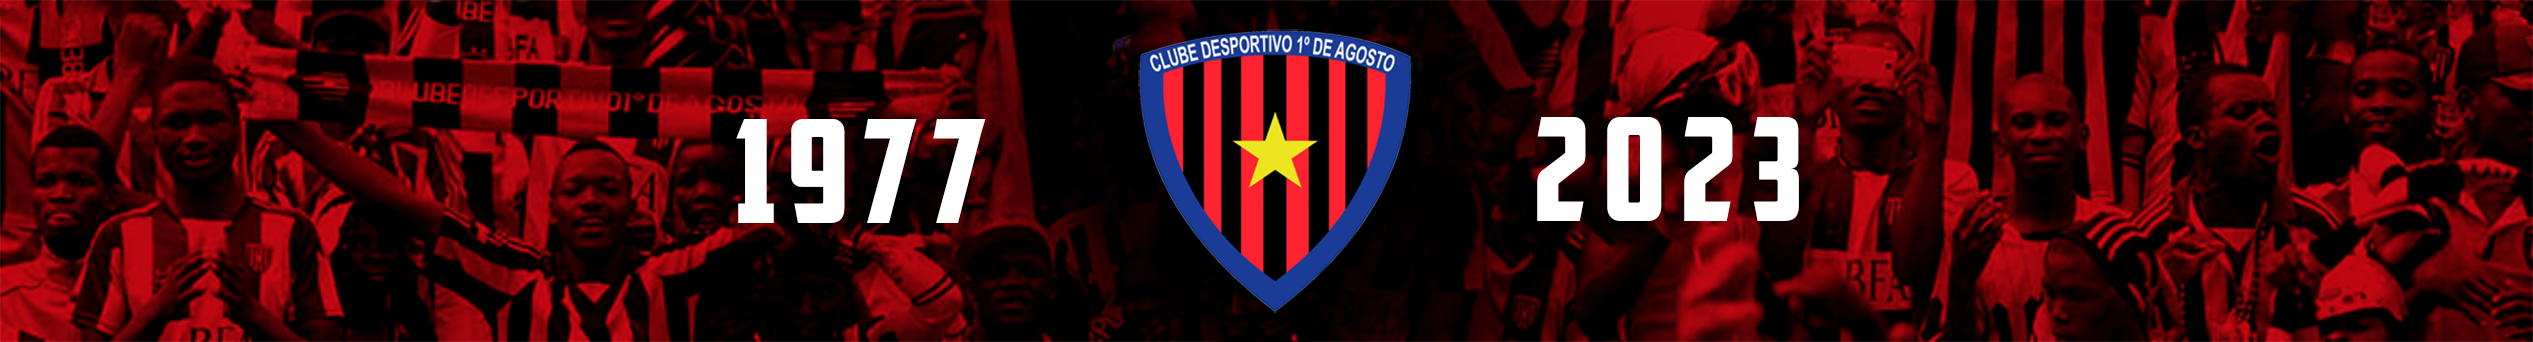 D'agosto Força D'agosto - Clube Desportivo 1º de Agosto